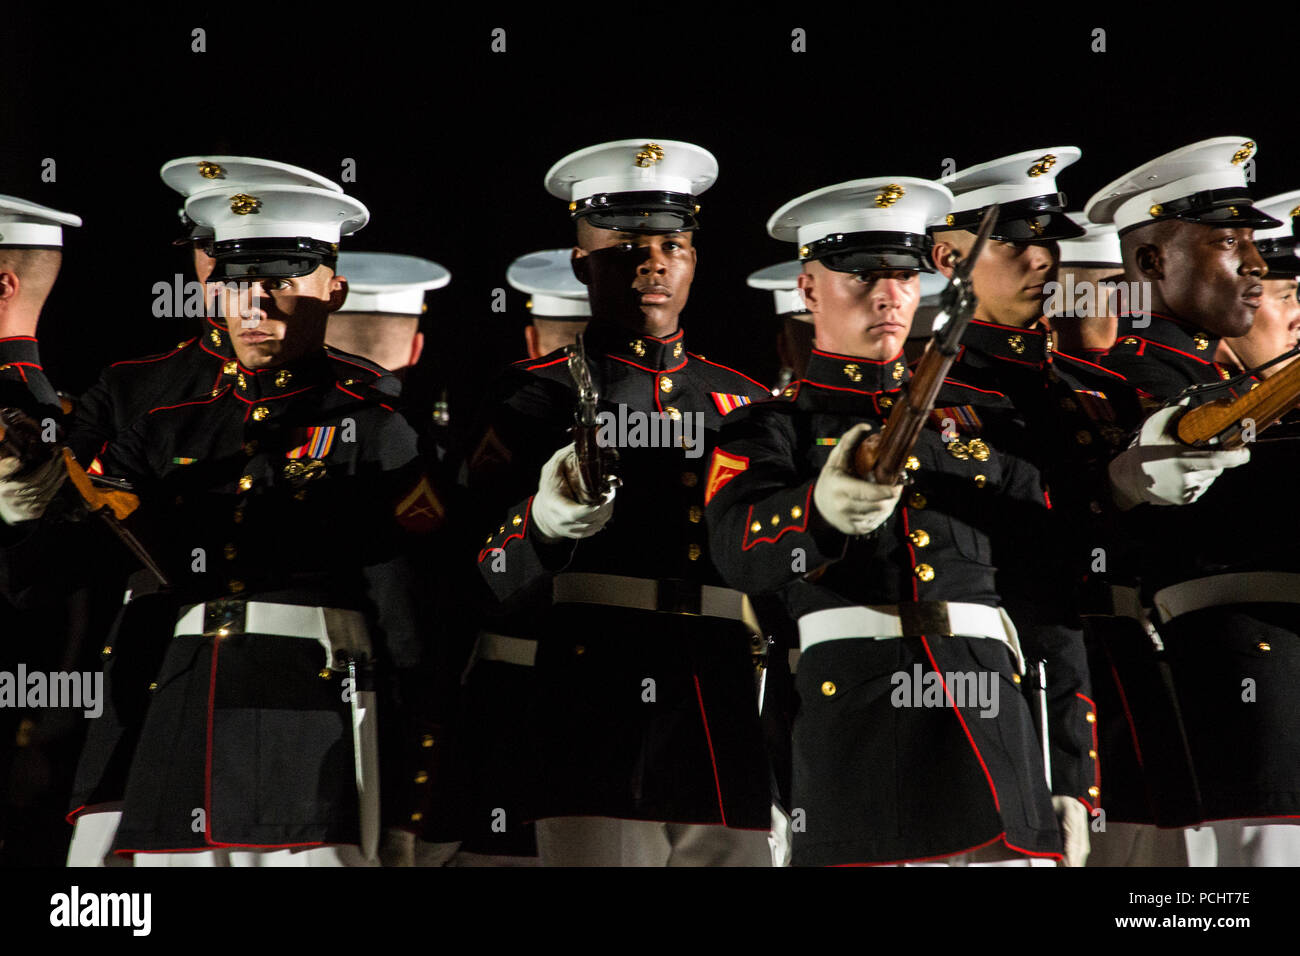 Marines mit dem US Marine Corps leise Bohren Platoon führen ihre "Bombe" platzen Sequenz während der Staff-Noncommissioned Officer Freitag Abend Parade bei Marine Barracks Washington D.C., 27. Juli 2018. Während der NATURSCHUTZBEHÖRDE Freitag Abend Parade, NATURSCHUTZBEHÖRDE der Knüppel von wichtigen Führungskräften' marching Positionen in der Regel von den Offizieren und Unteroffizieren nicht übernehmen. Stockfoto